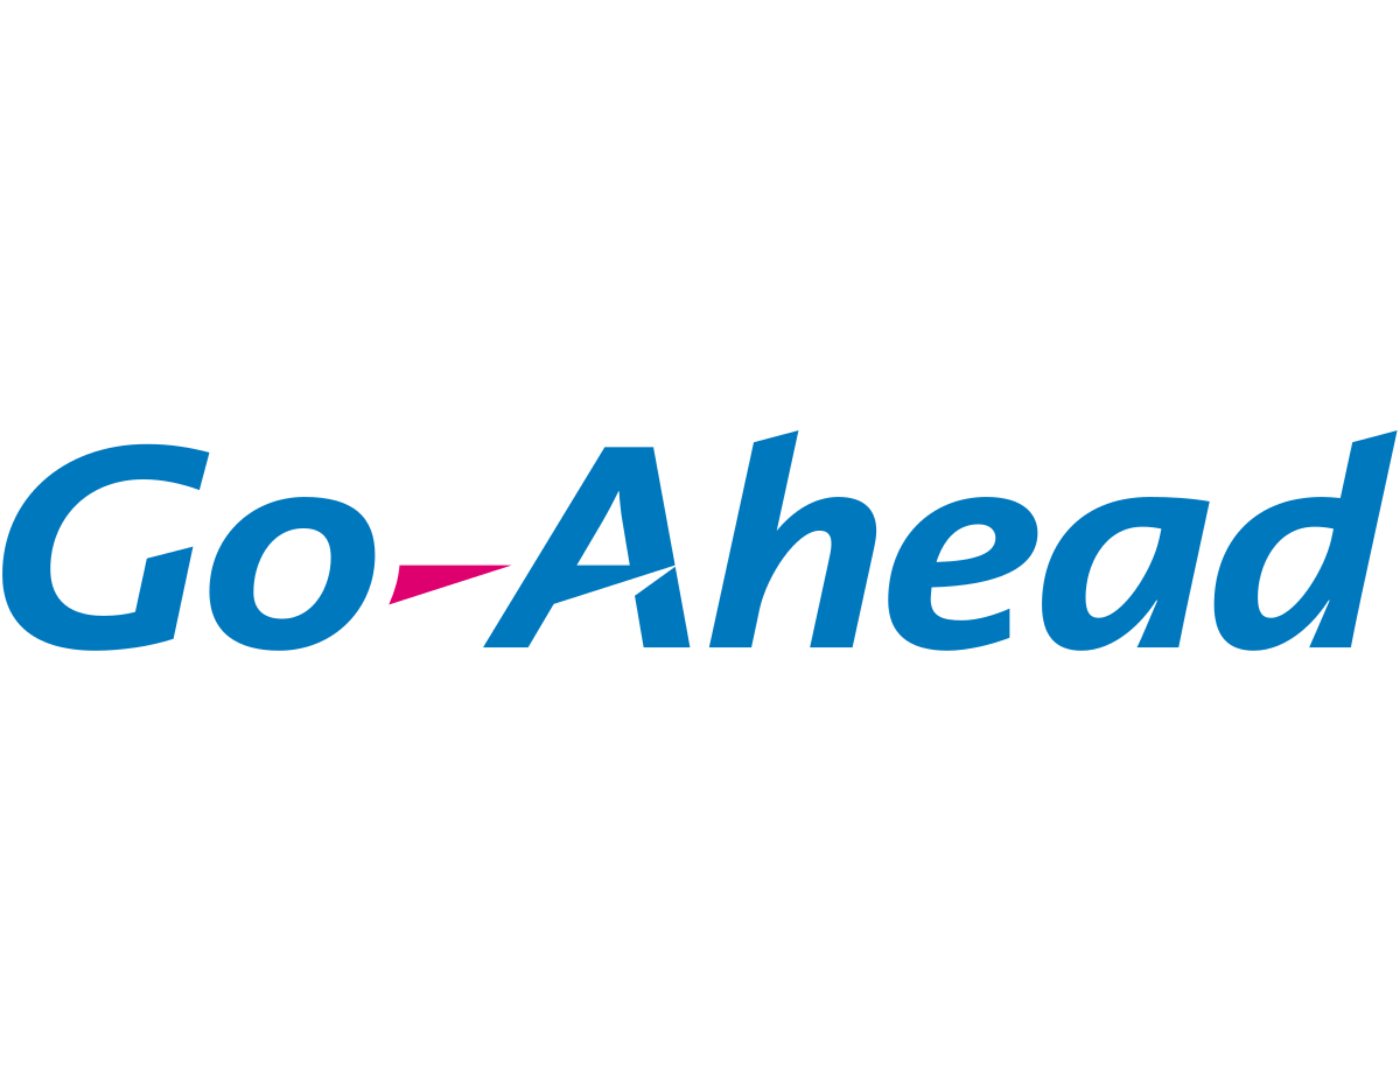 Go-Ahead